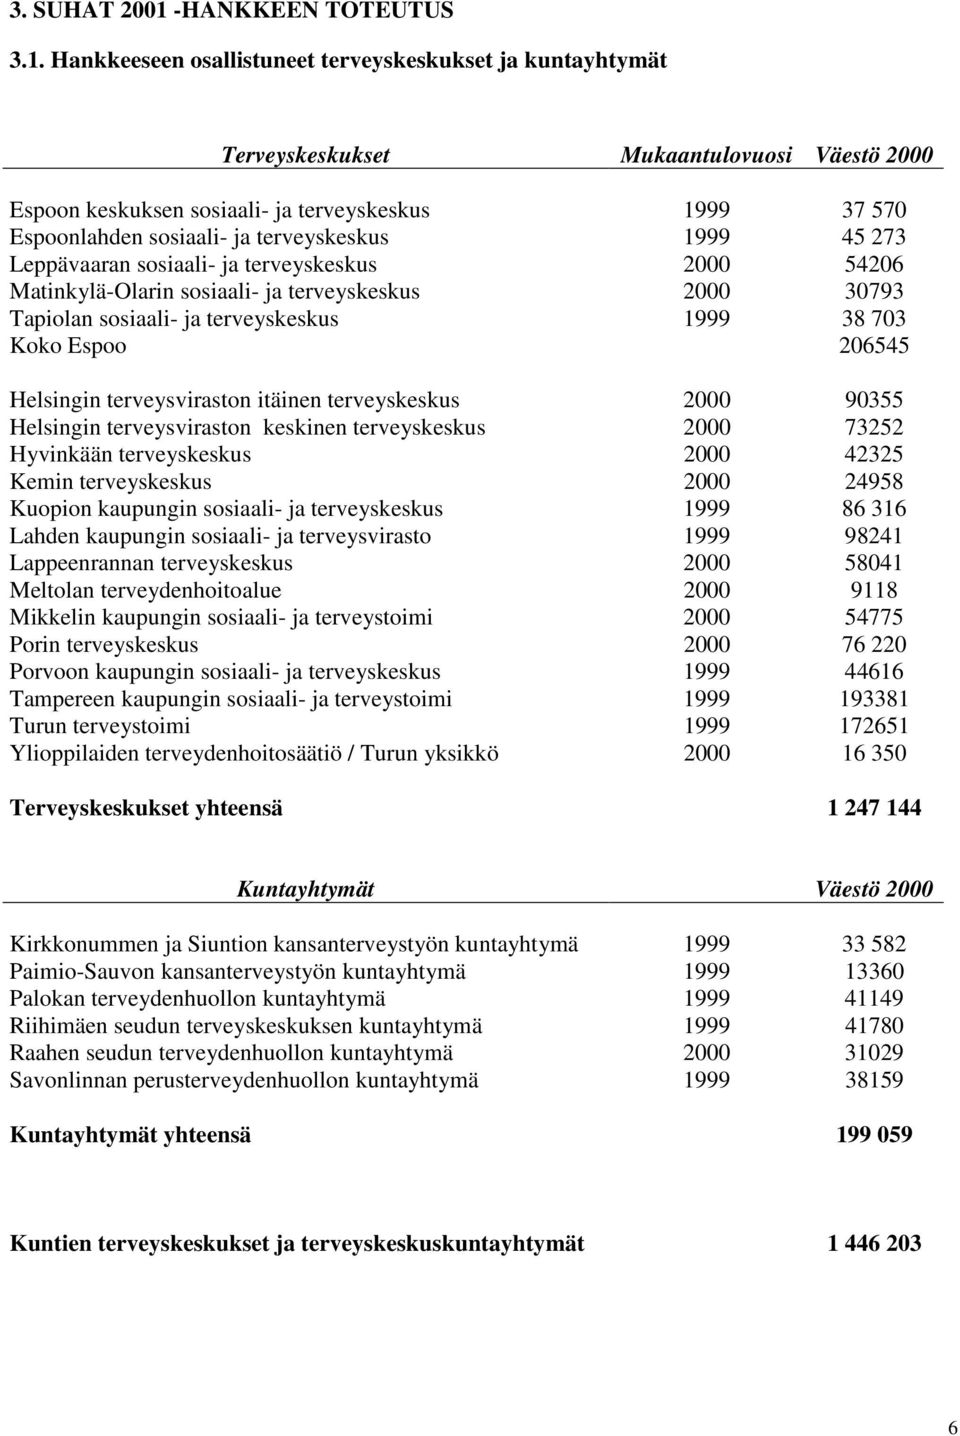 Hankkeeseen osallistuneet terveyskeskukset ja kuntayhtymät Terveyskeskukset Mukaantulovuosi Väestö 2000 Espoon keskuksen sosiaali- ja terveyskeskus 1999 37 570 Espoonlahden sosiaali- ja terveyskeskus